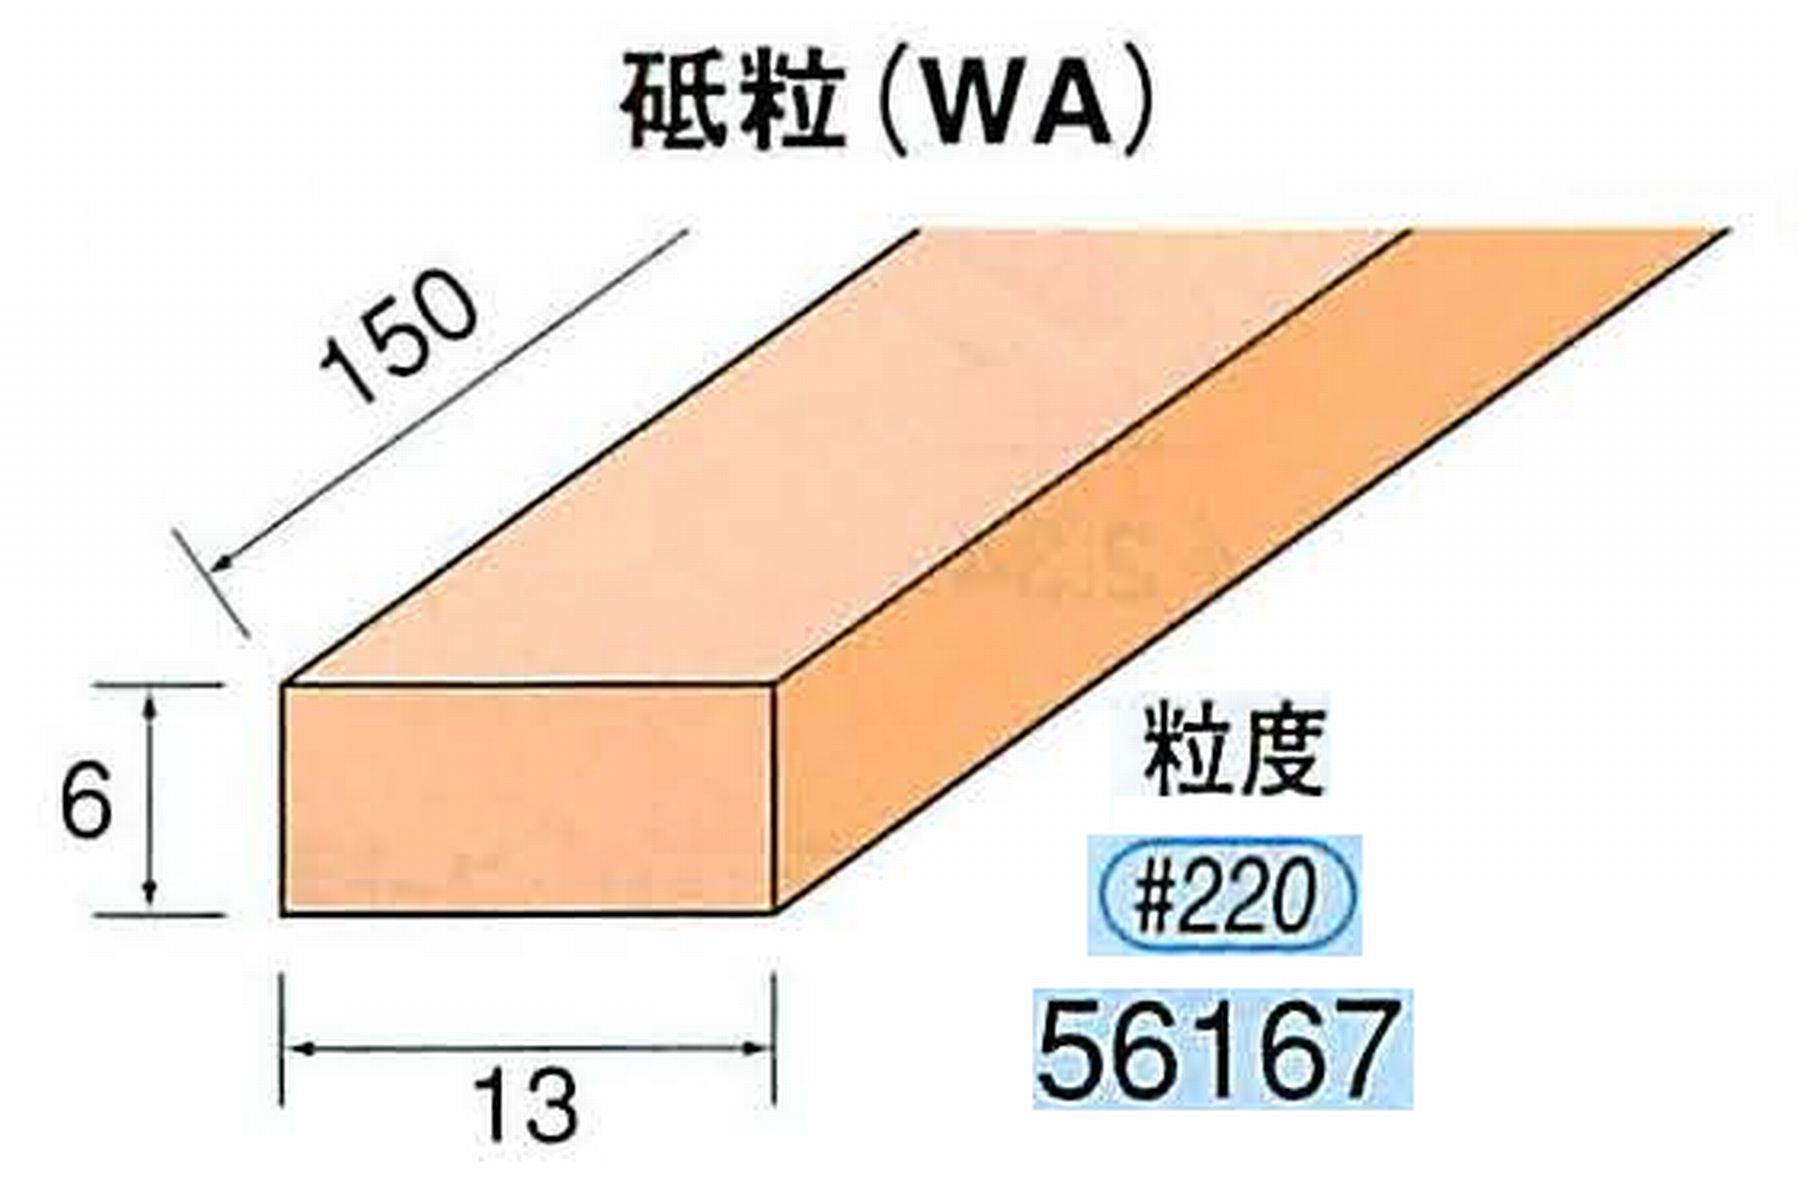 ナカニシ/NAKANISHI スティック砥石 スタンダードシリーズ 砥粒(WA) 56167